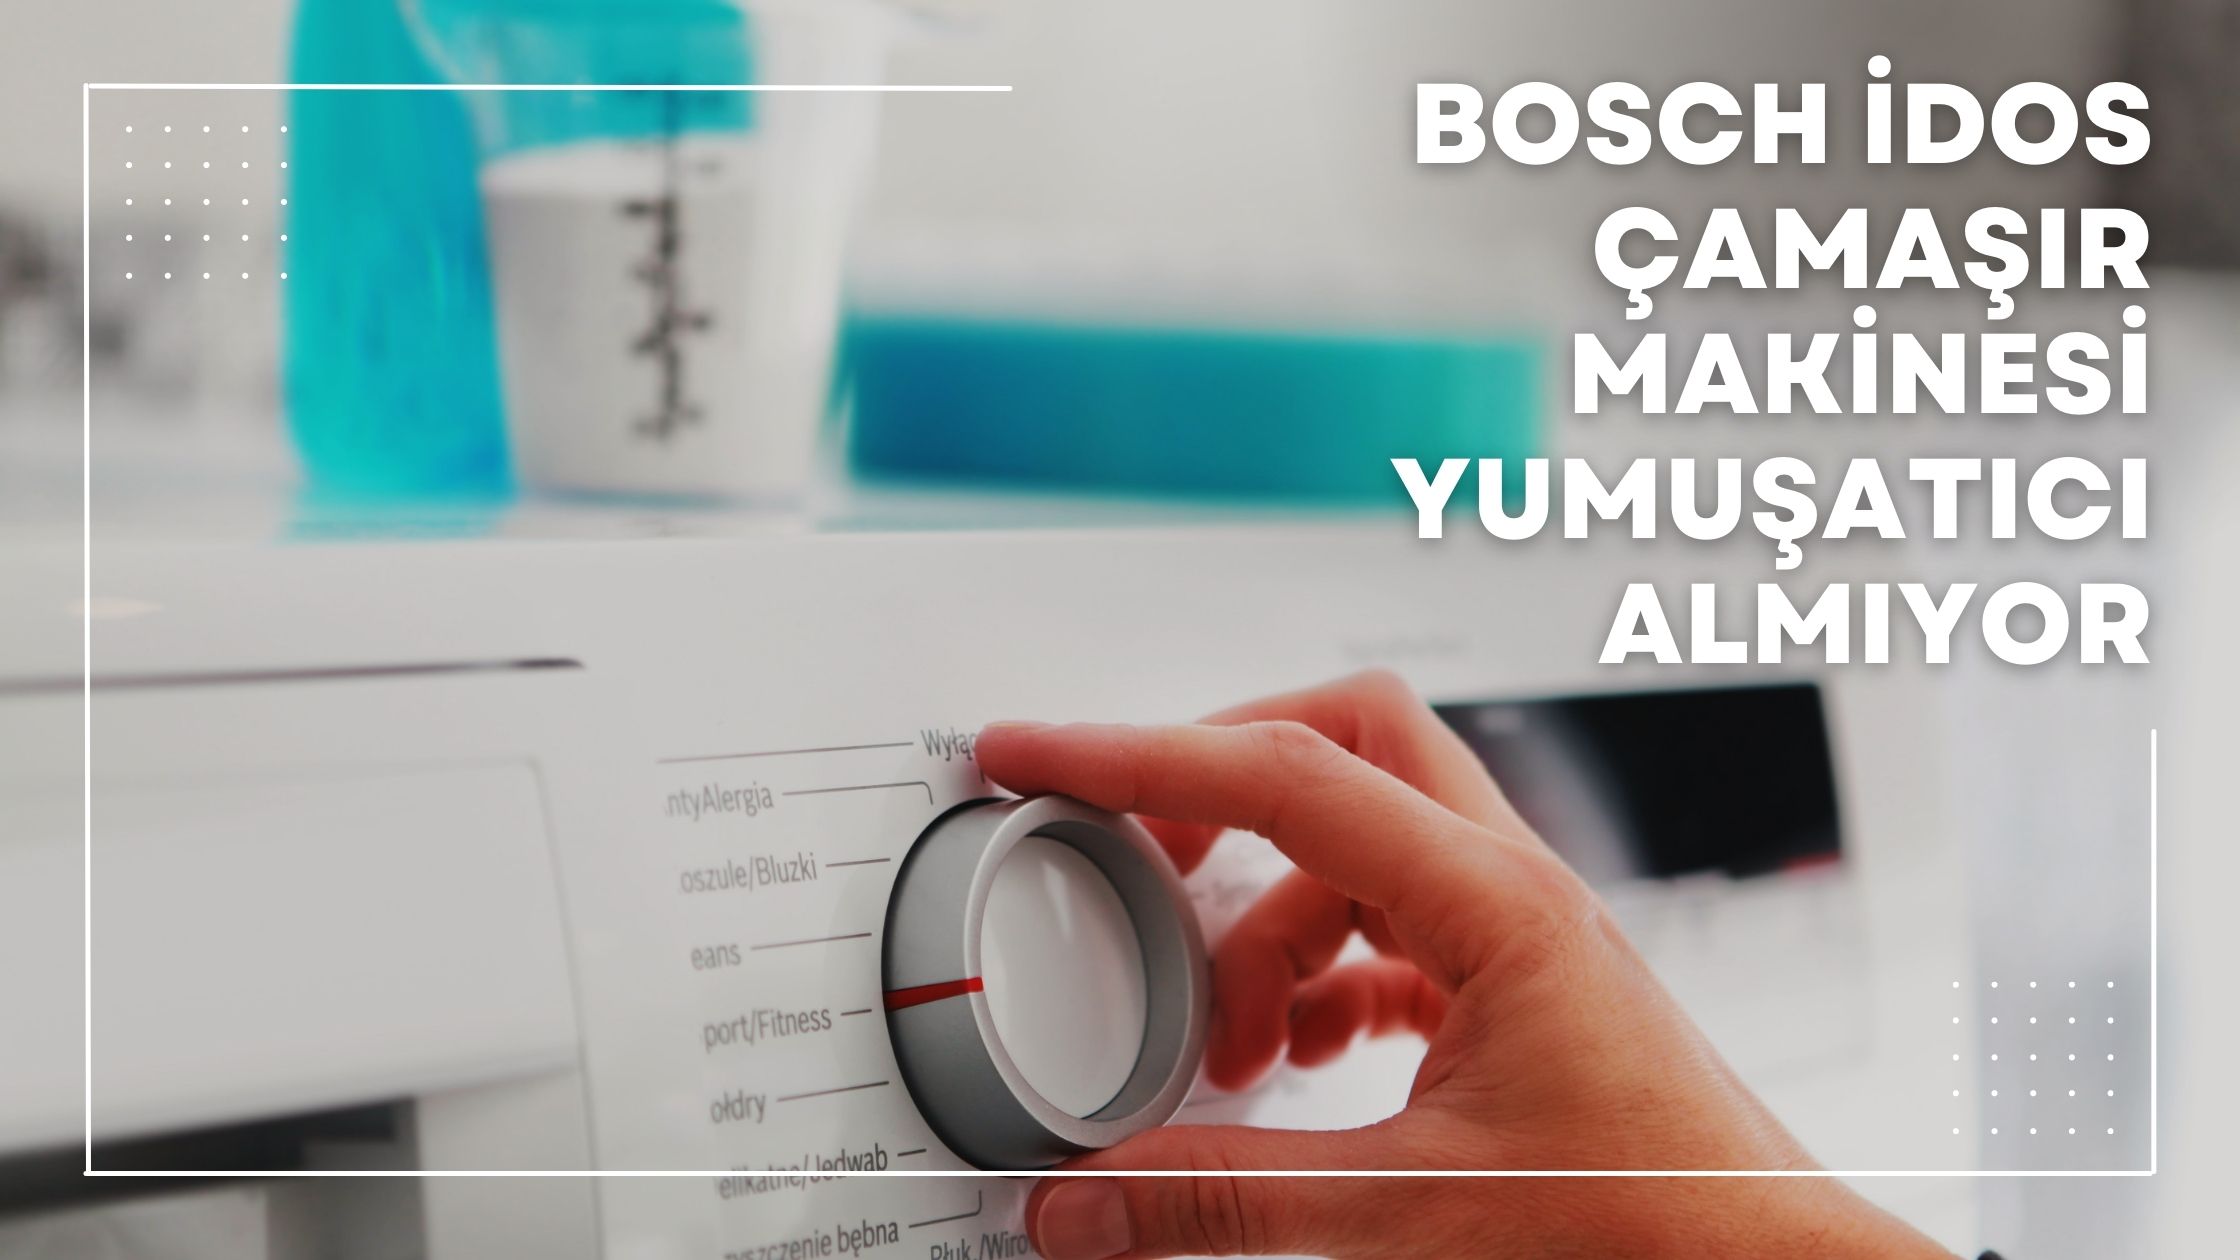 Bosch Idos Çamaşır Makinesi Yumuşatıcı Almıyor